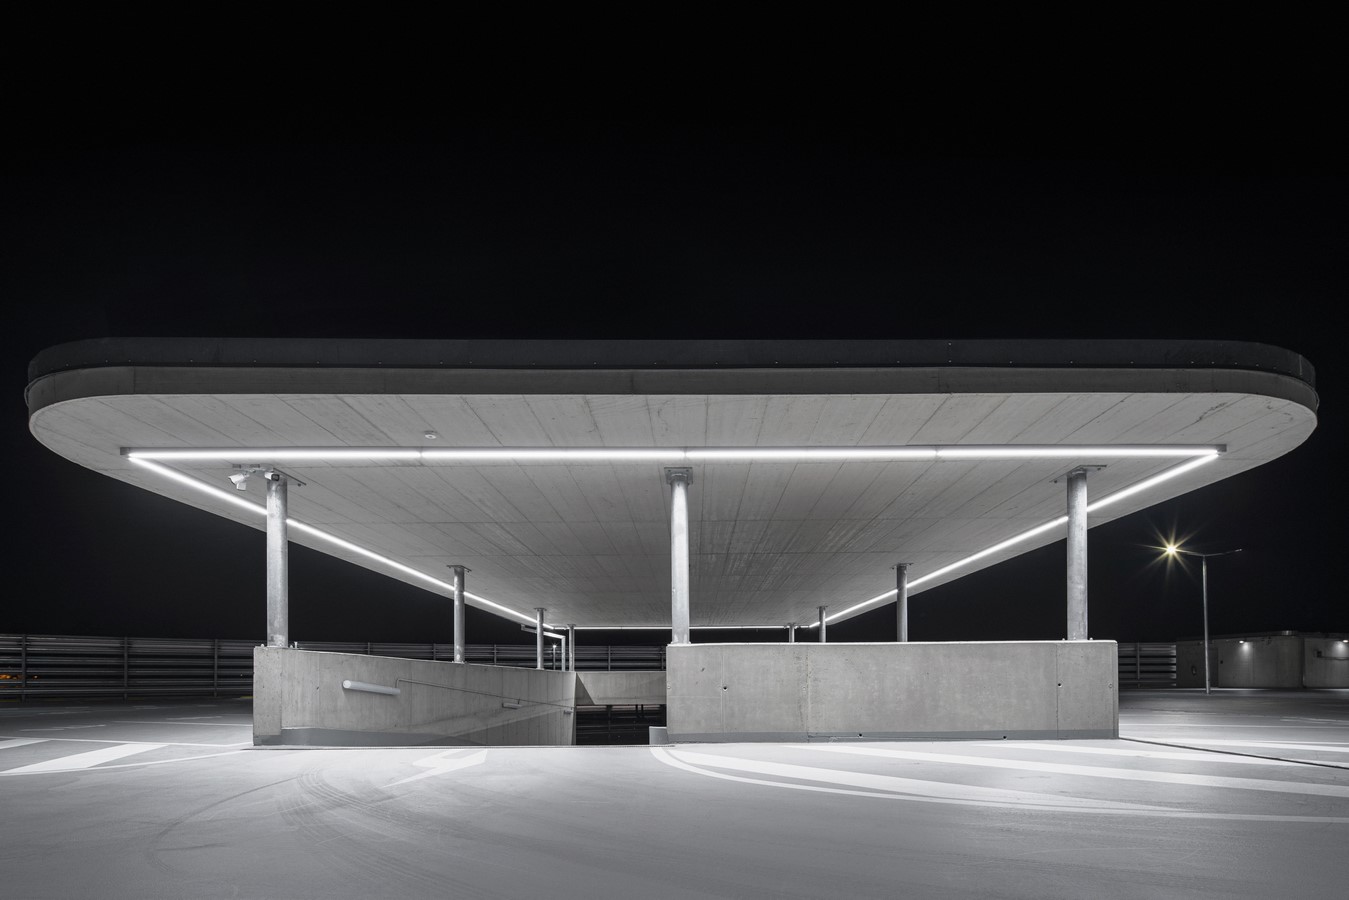 Dolní Břežany Parking House by Fránek architects - Sheet5